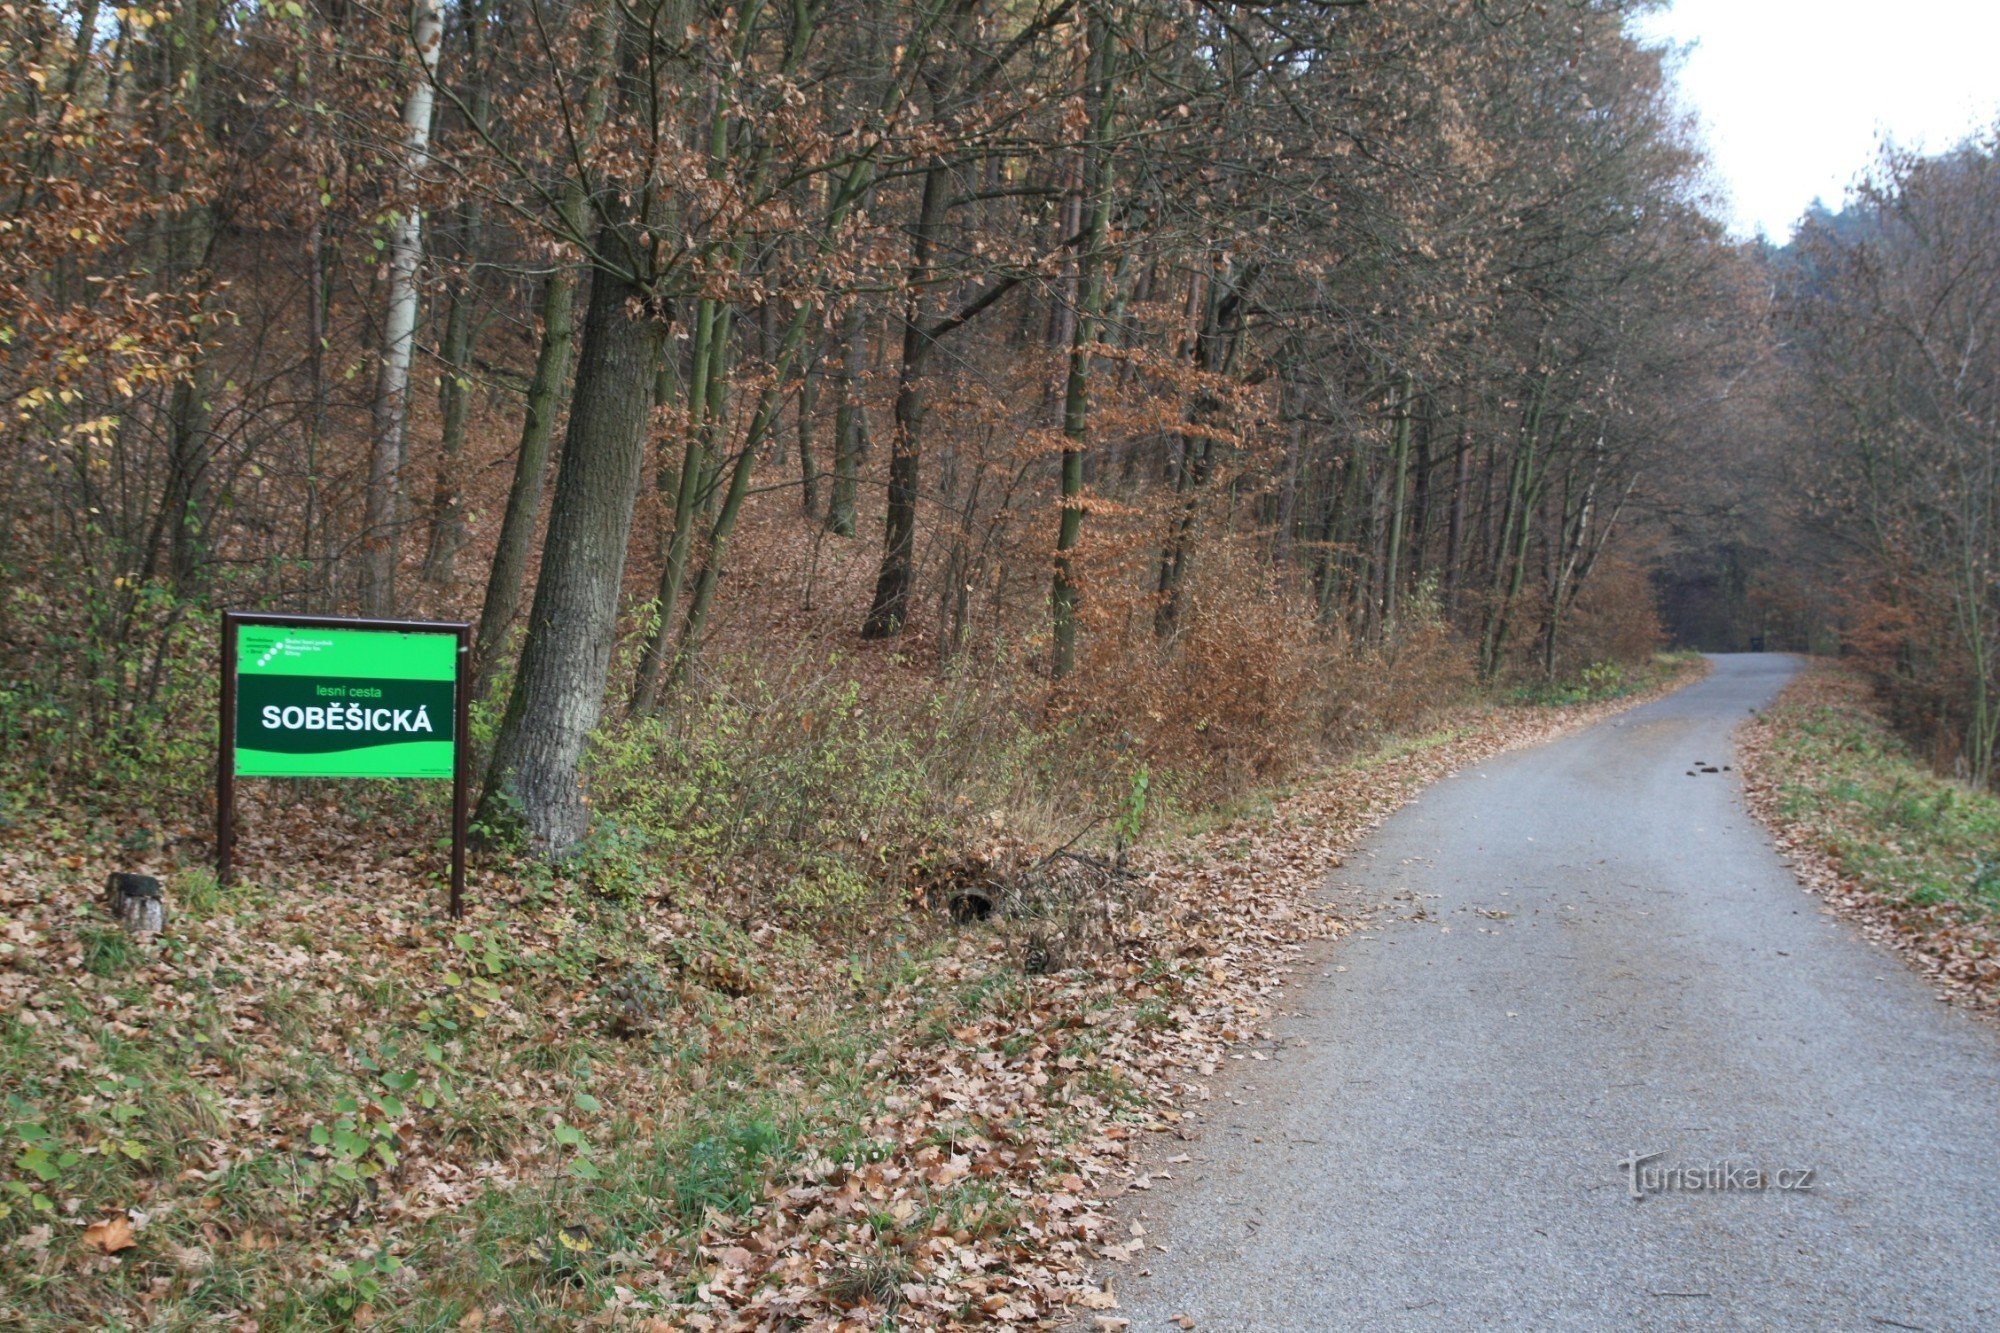 Soběšická cesta börjar i slutet av byn i början av skogen